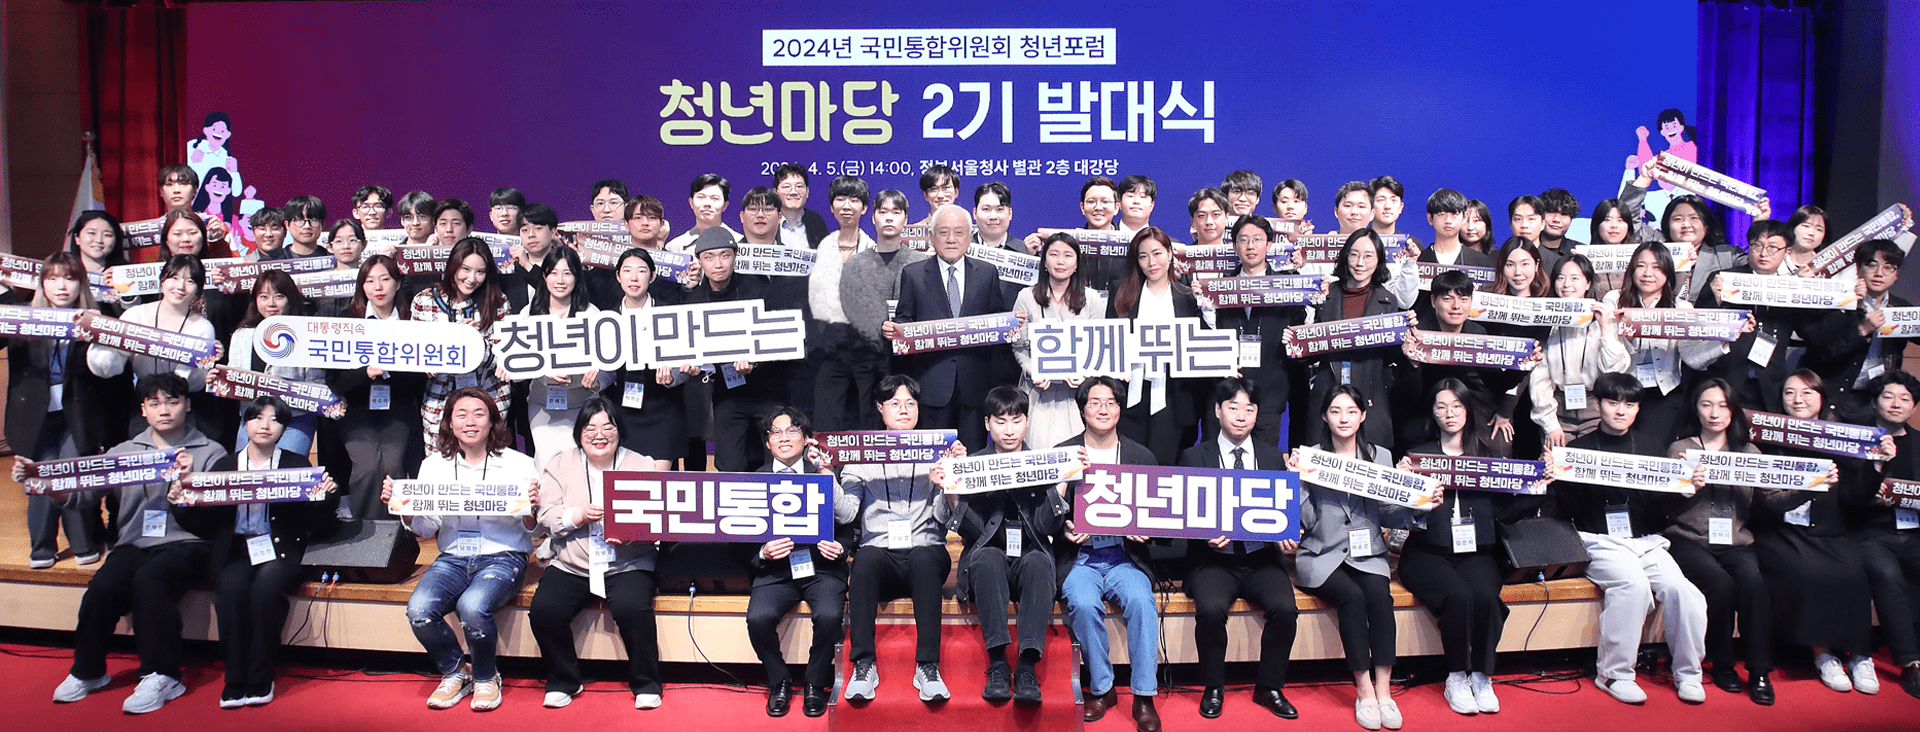 국민통합위원회 청년포럼 「청년마당」 2기 발대식 개최